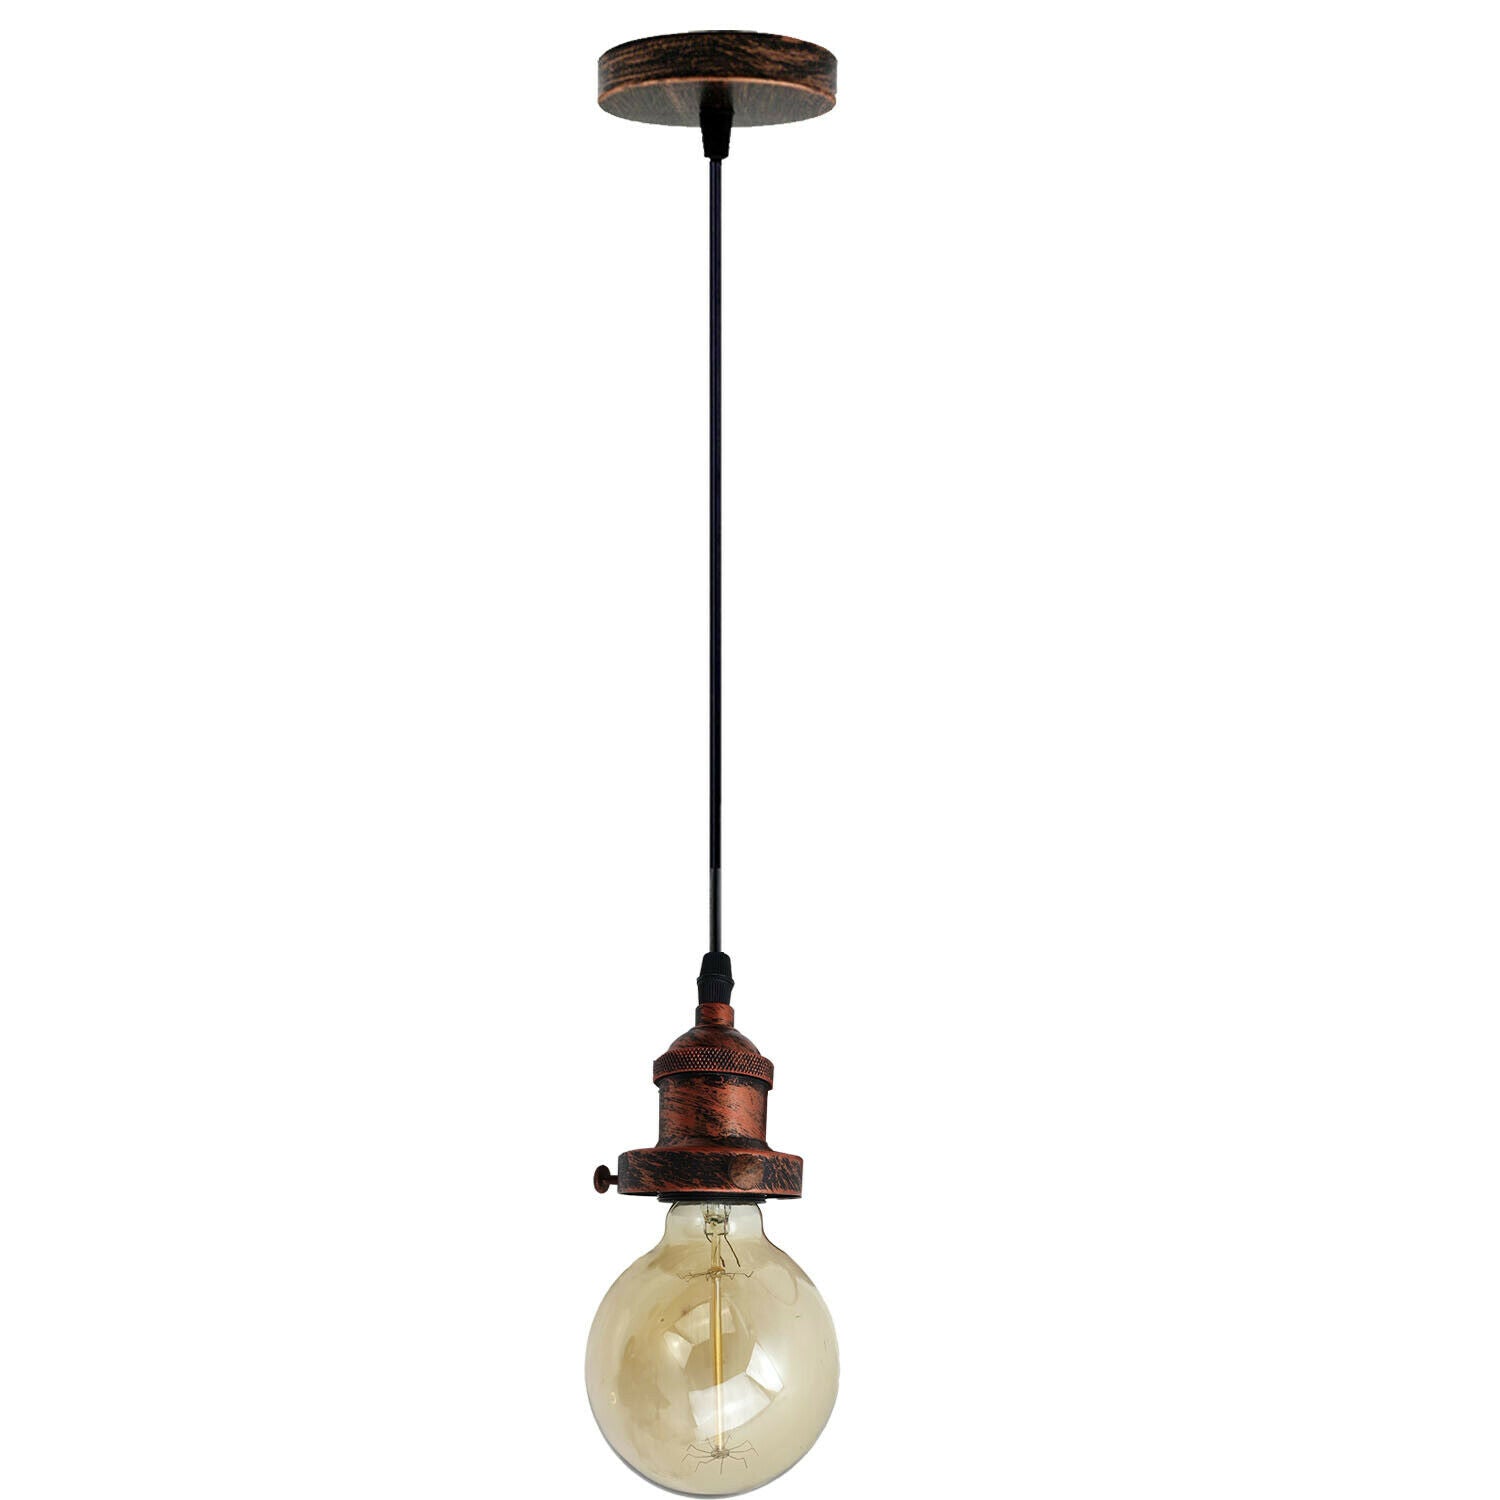 E27 Ceiling Rose Light Fitting Vintage Industrial Pendant Lamp Bulb Holder Light - Rustic Red~2206 - LEDSone UK Ltd